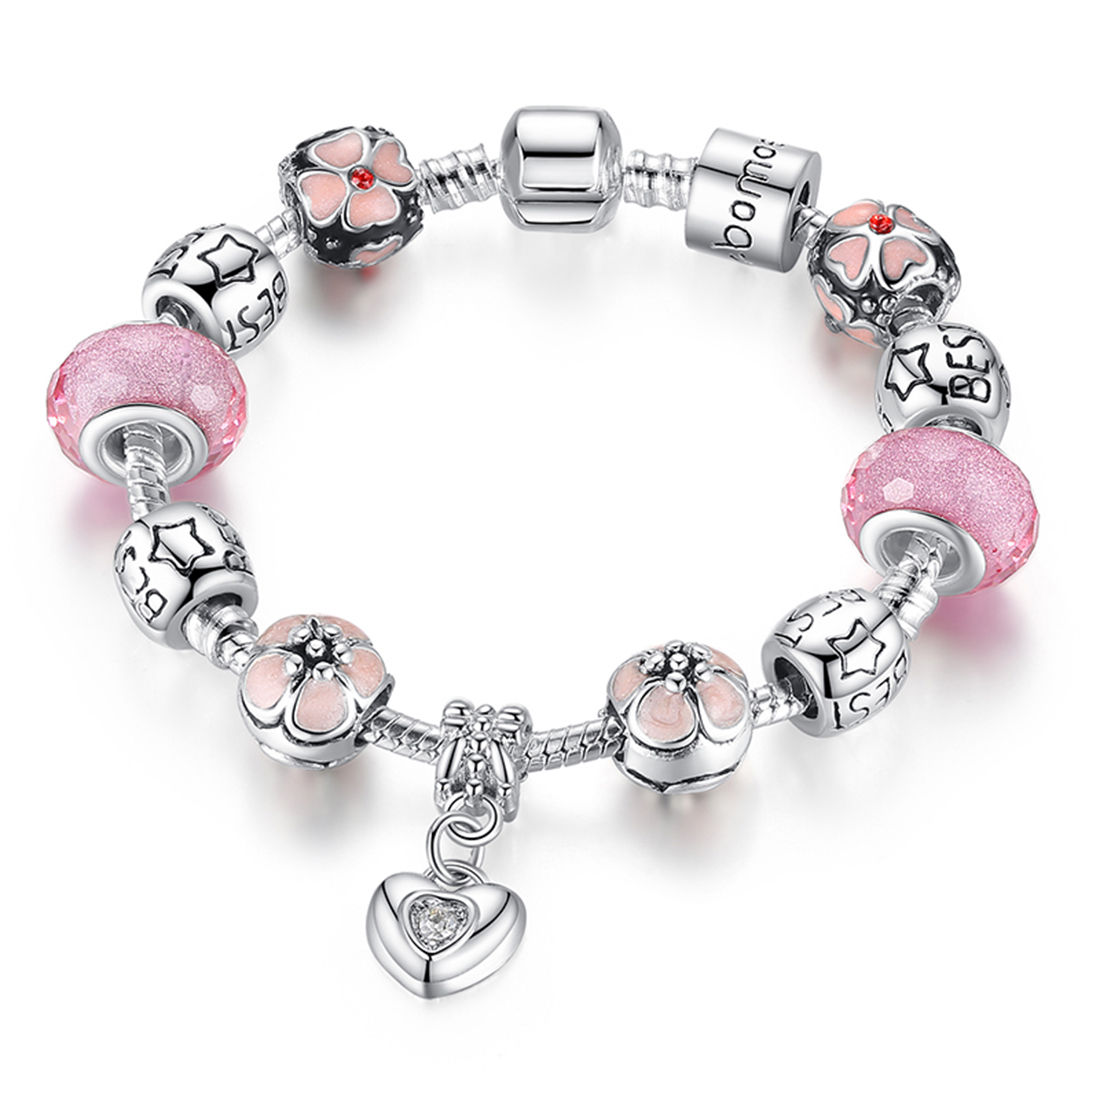 Pandora murano miroir rose  Girly accessories Pandora bracelets Pandora  charm bracelet